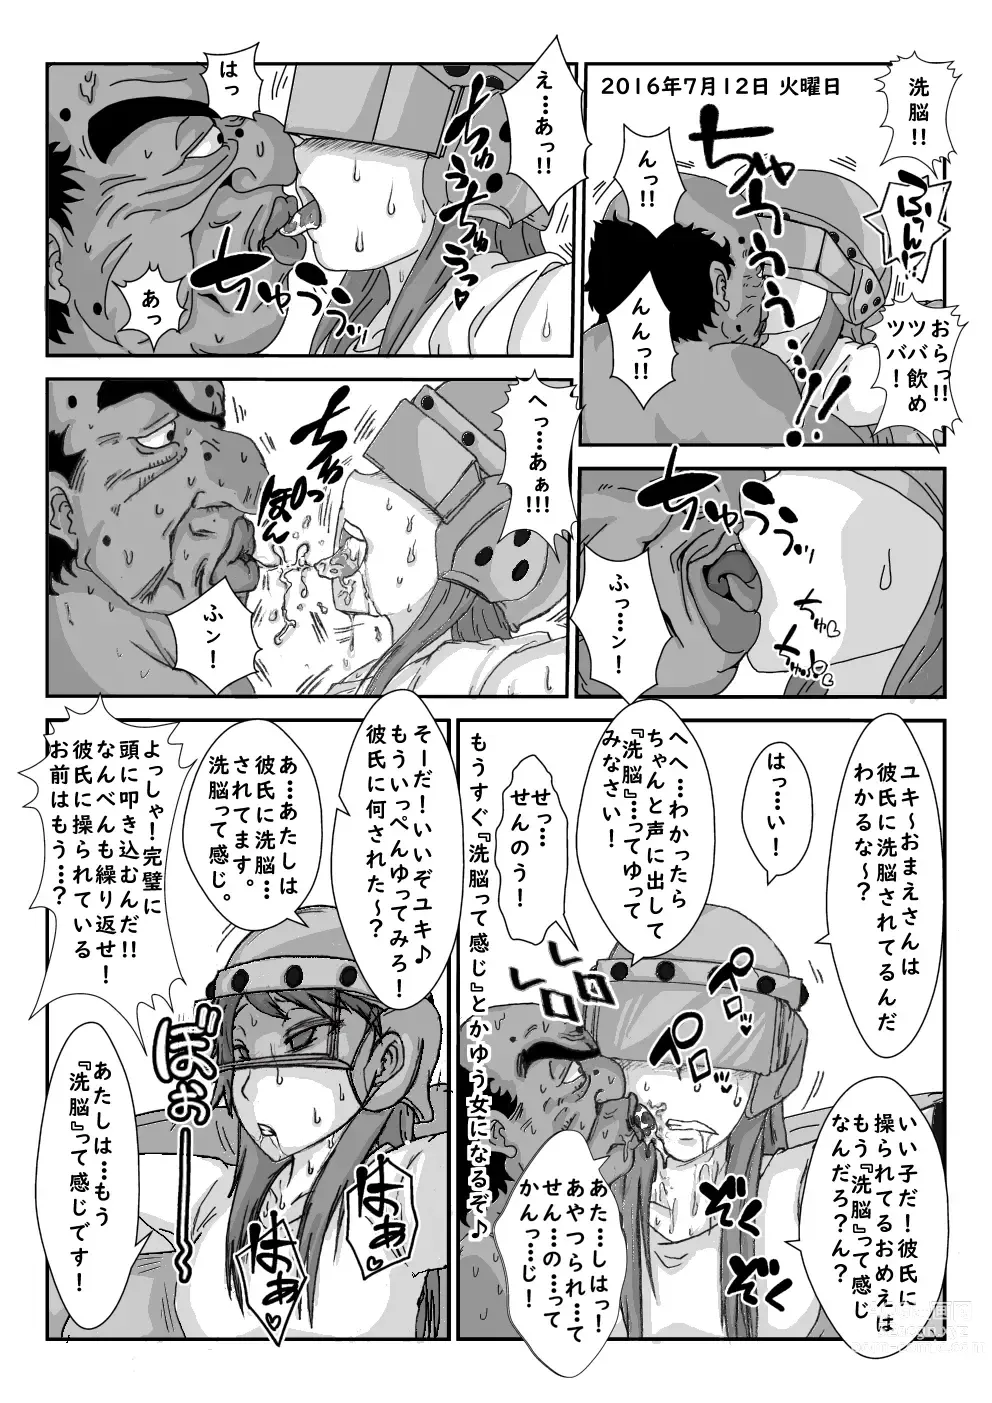 Page 12 of doujinshi Sennou